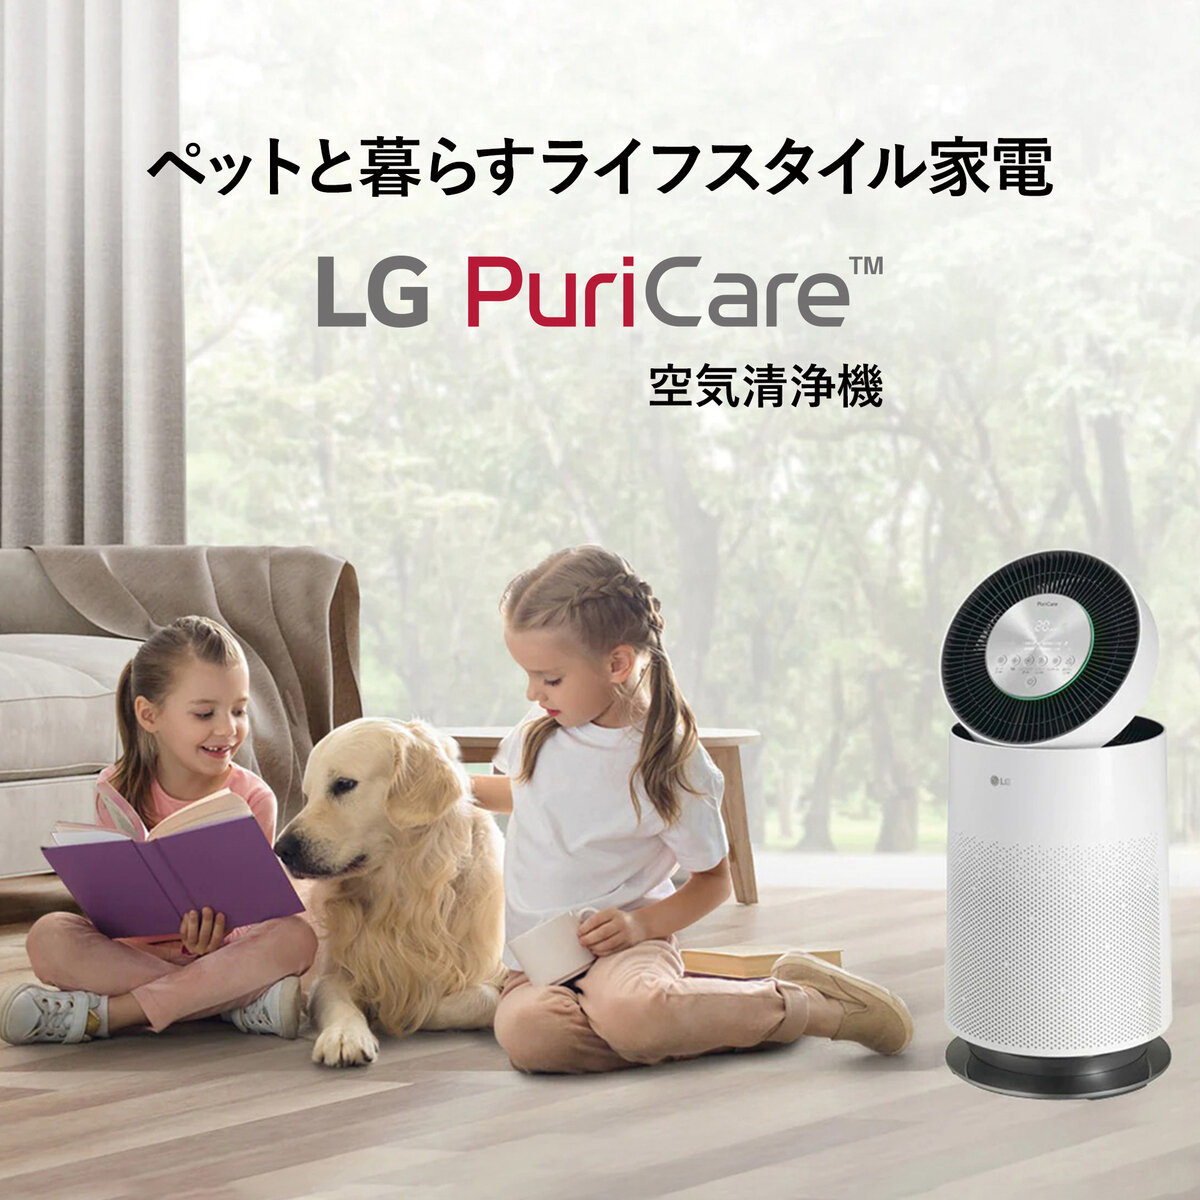 LG サーキュレーター機能付き2in1空気清浄機 LG PuriCare Pet AS657DWT0